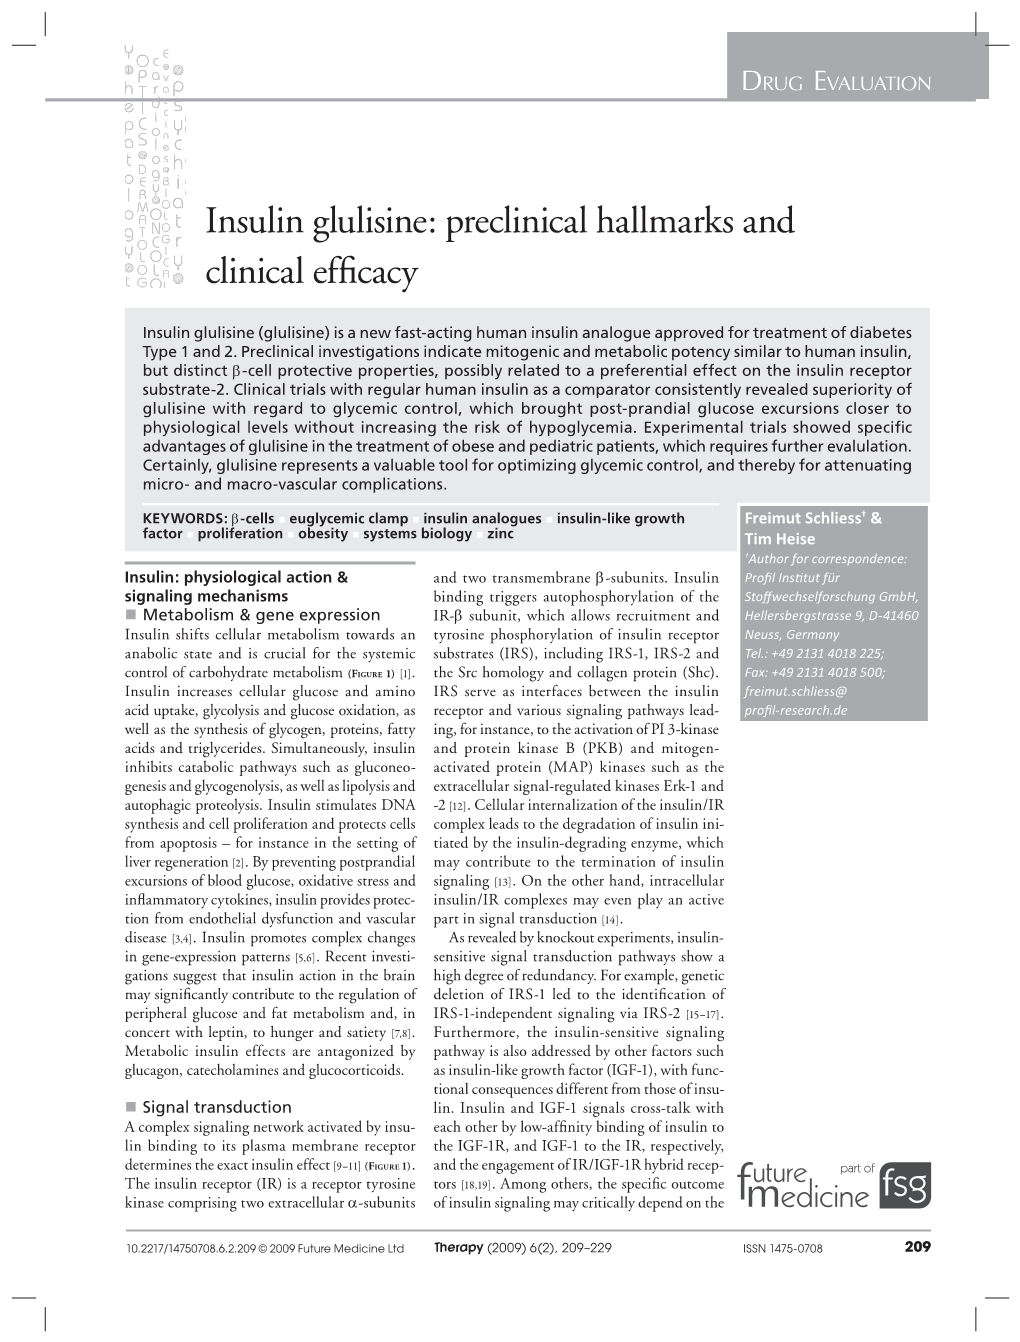 Insulin Glulisine: Preclinical Hallmarks and Clinical Efﬁ Cacy